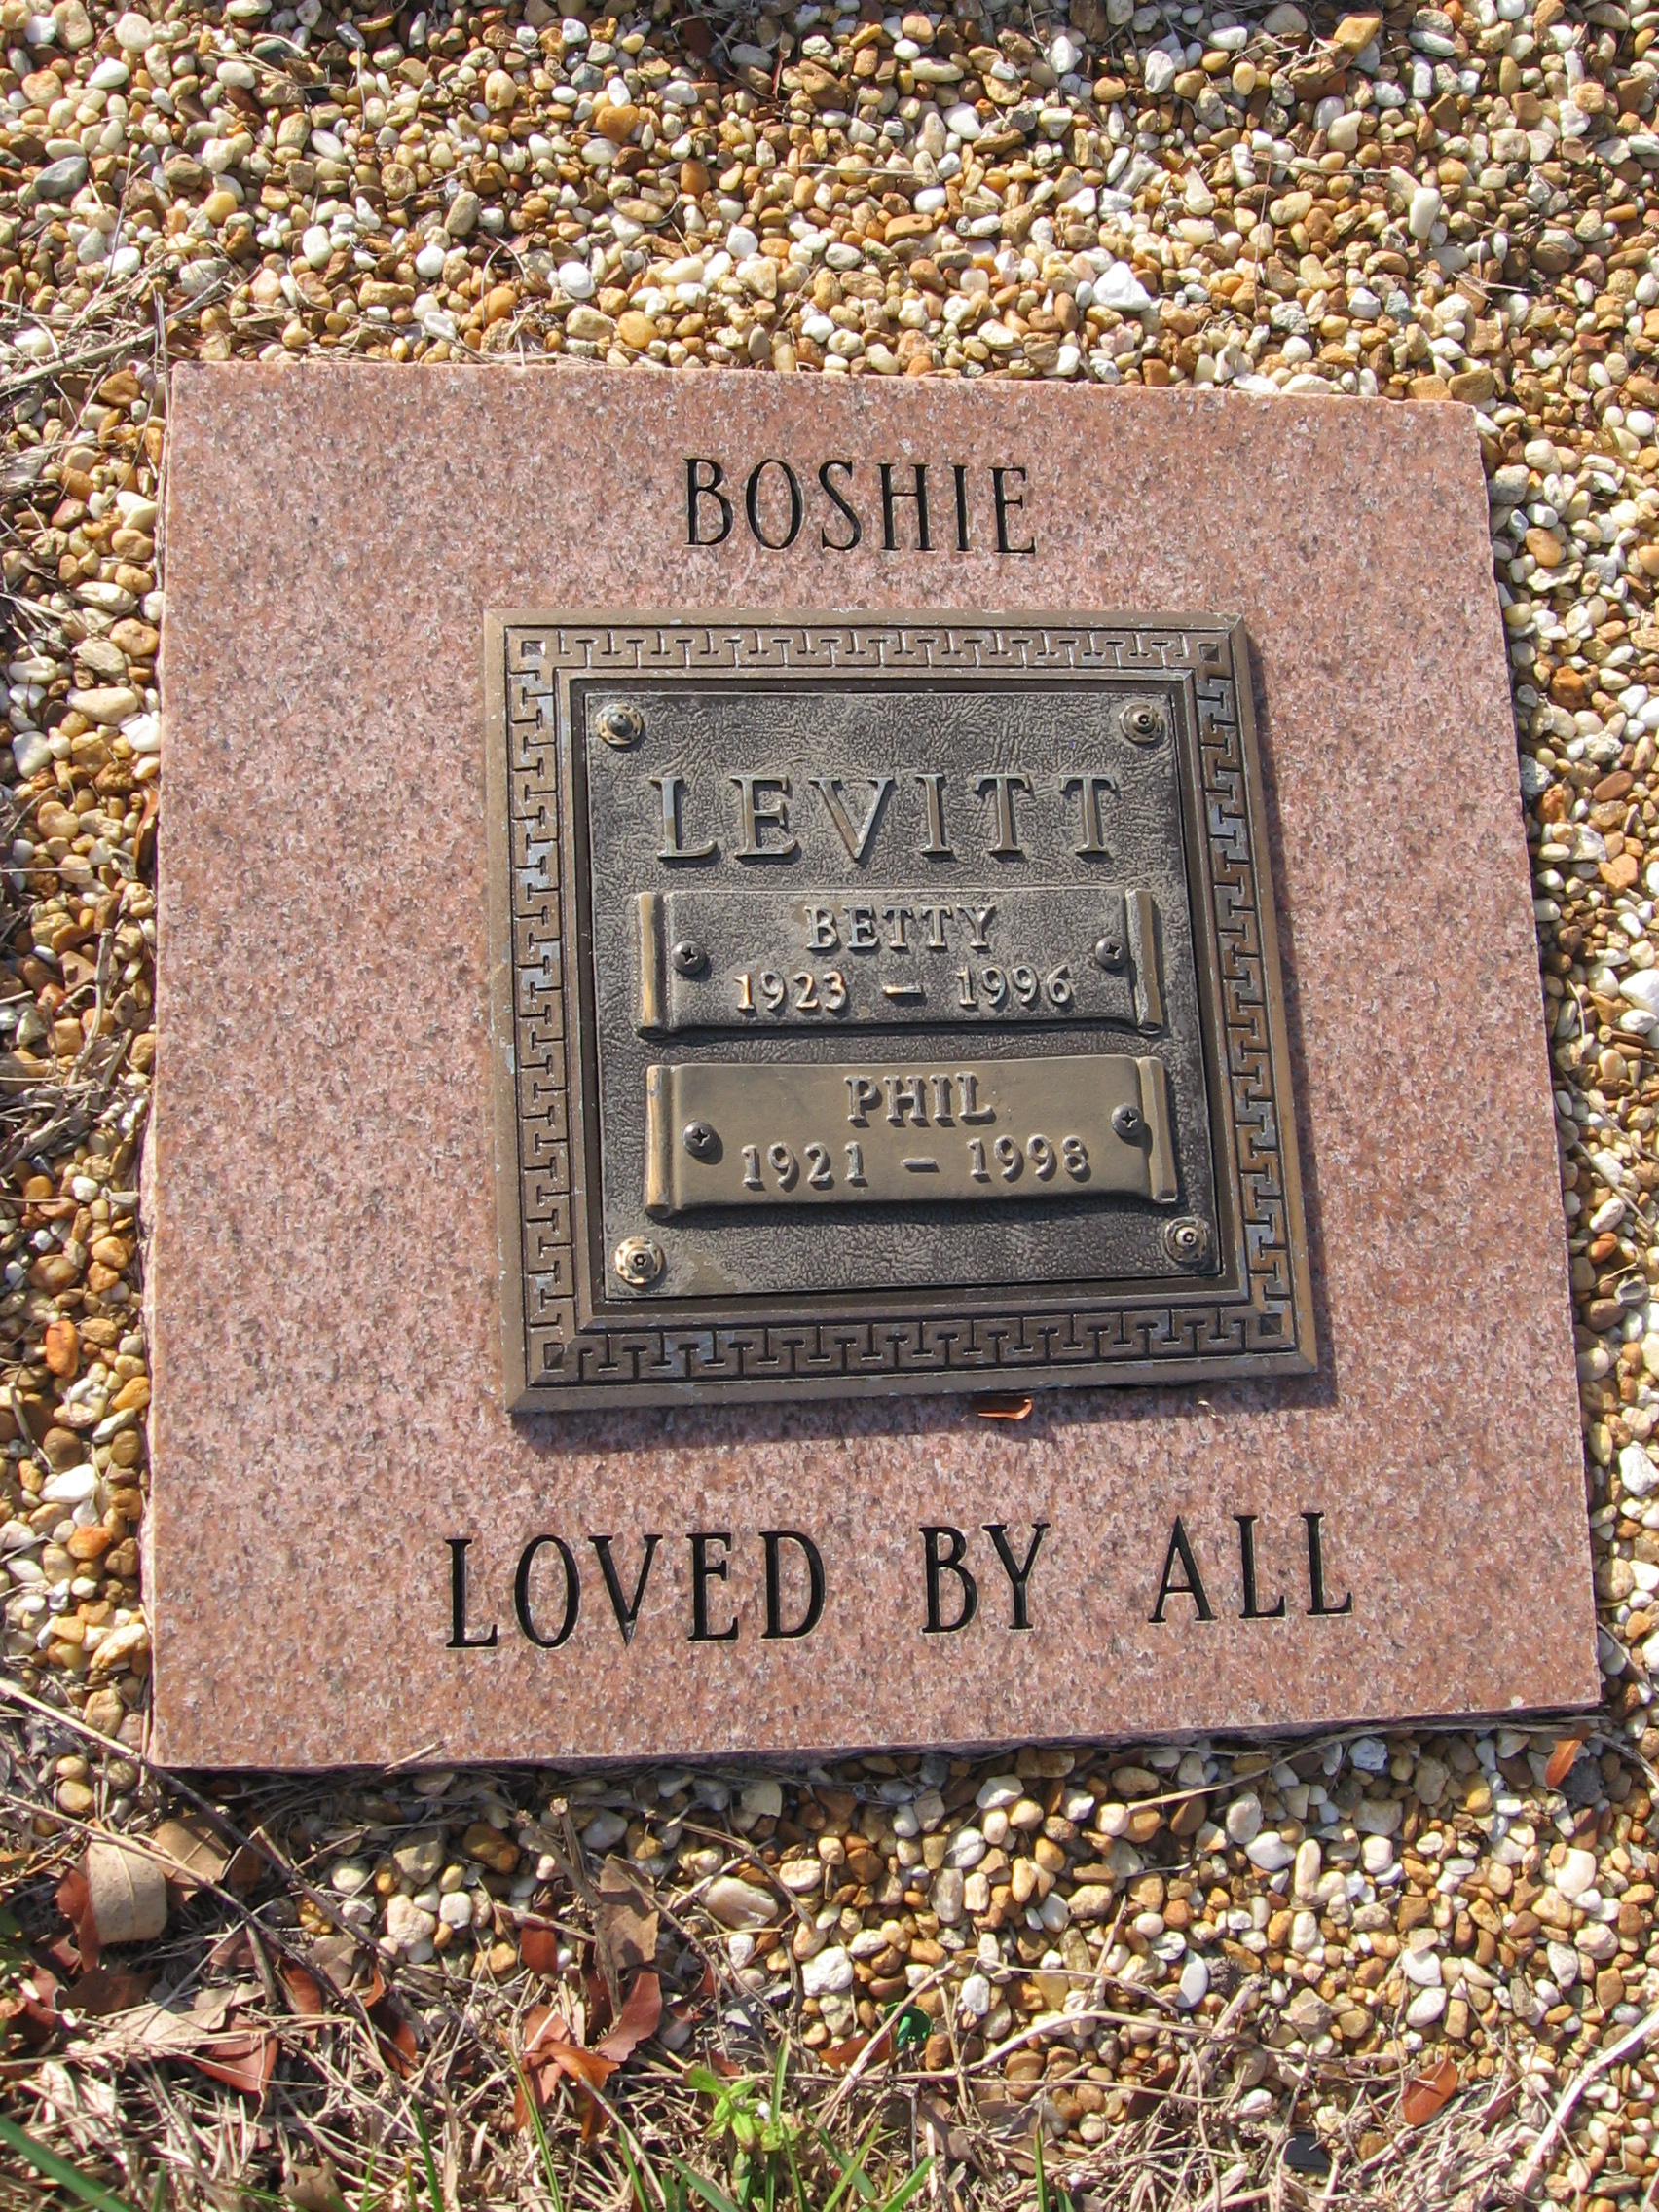 Betty Levitt